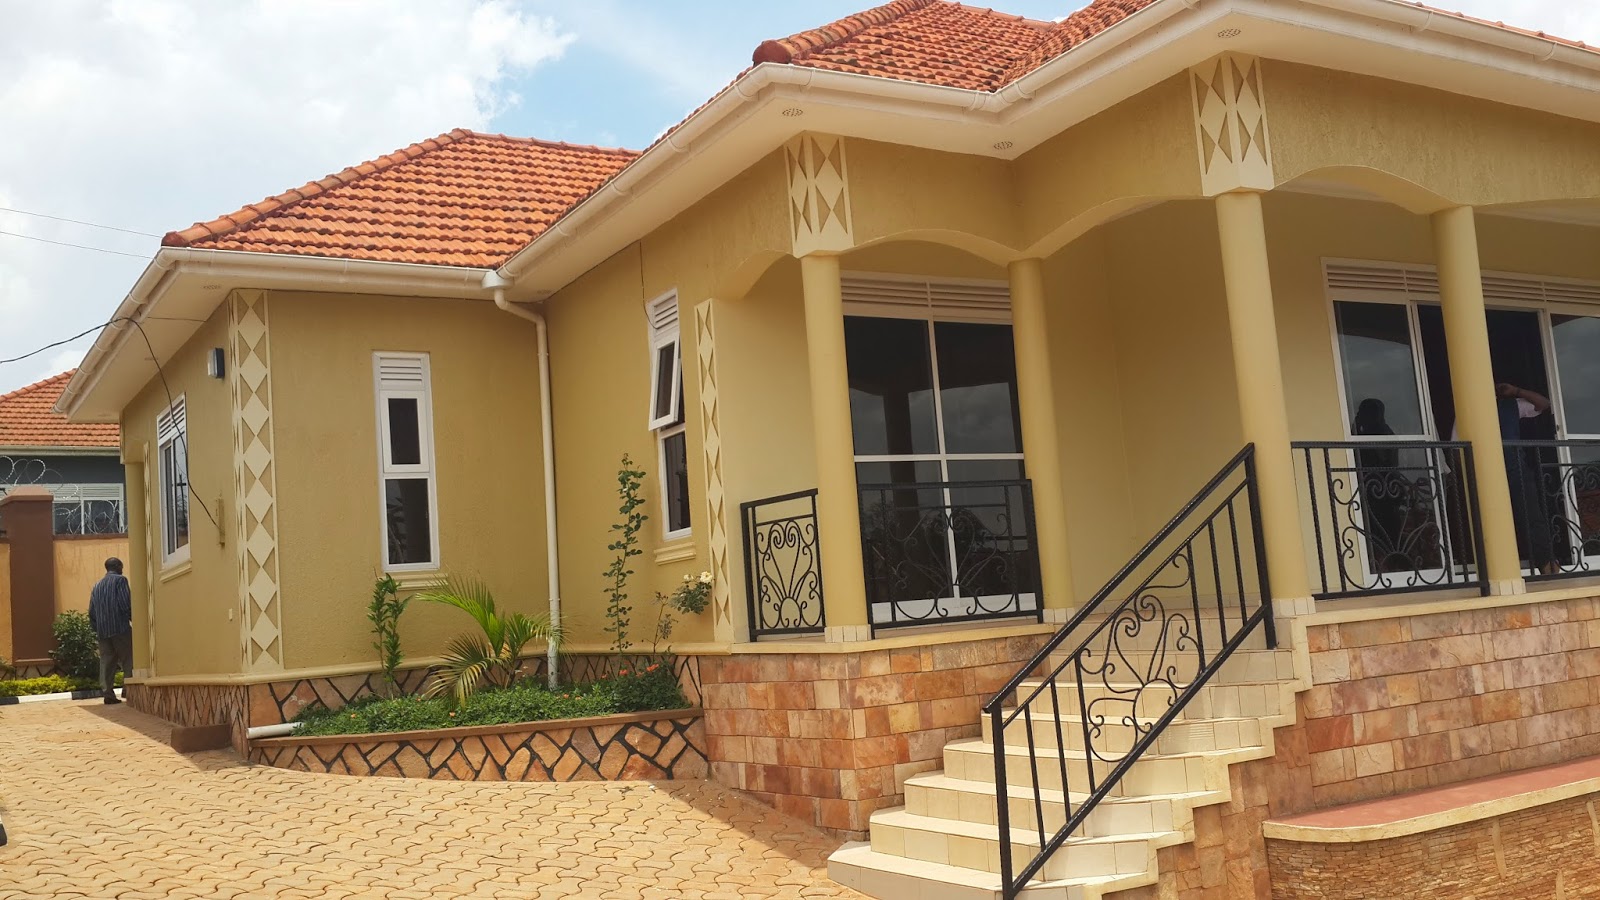 4 Bedroom House Plans In Uganda  Modern House